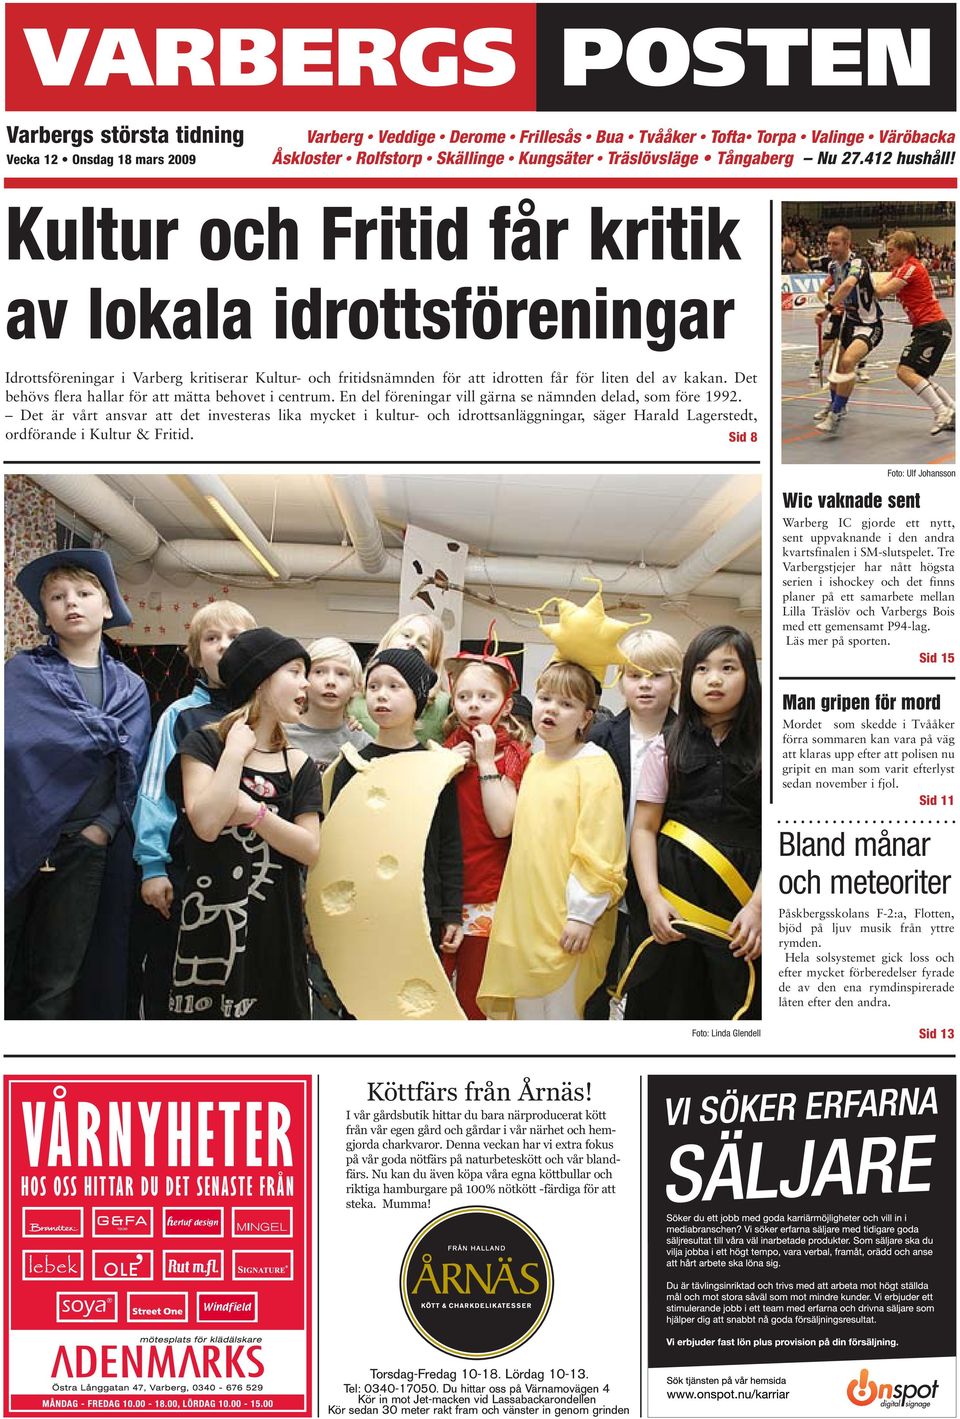 Kultur och Fritid får kritik Varbergs av lokala största tidning idrottsföreningar Idrottsföreningar i Varberg kritiserar Kultur- och fritidsnämnden för att idrotten får för liten del av kakan.